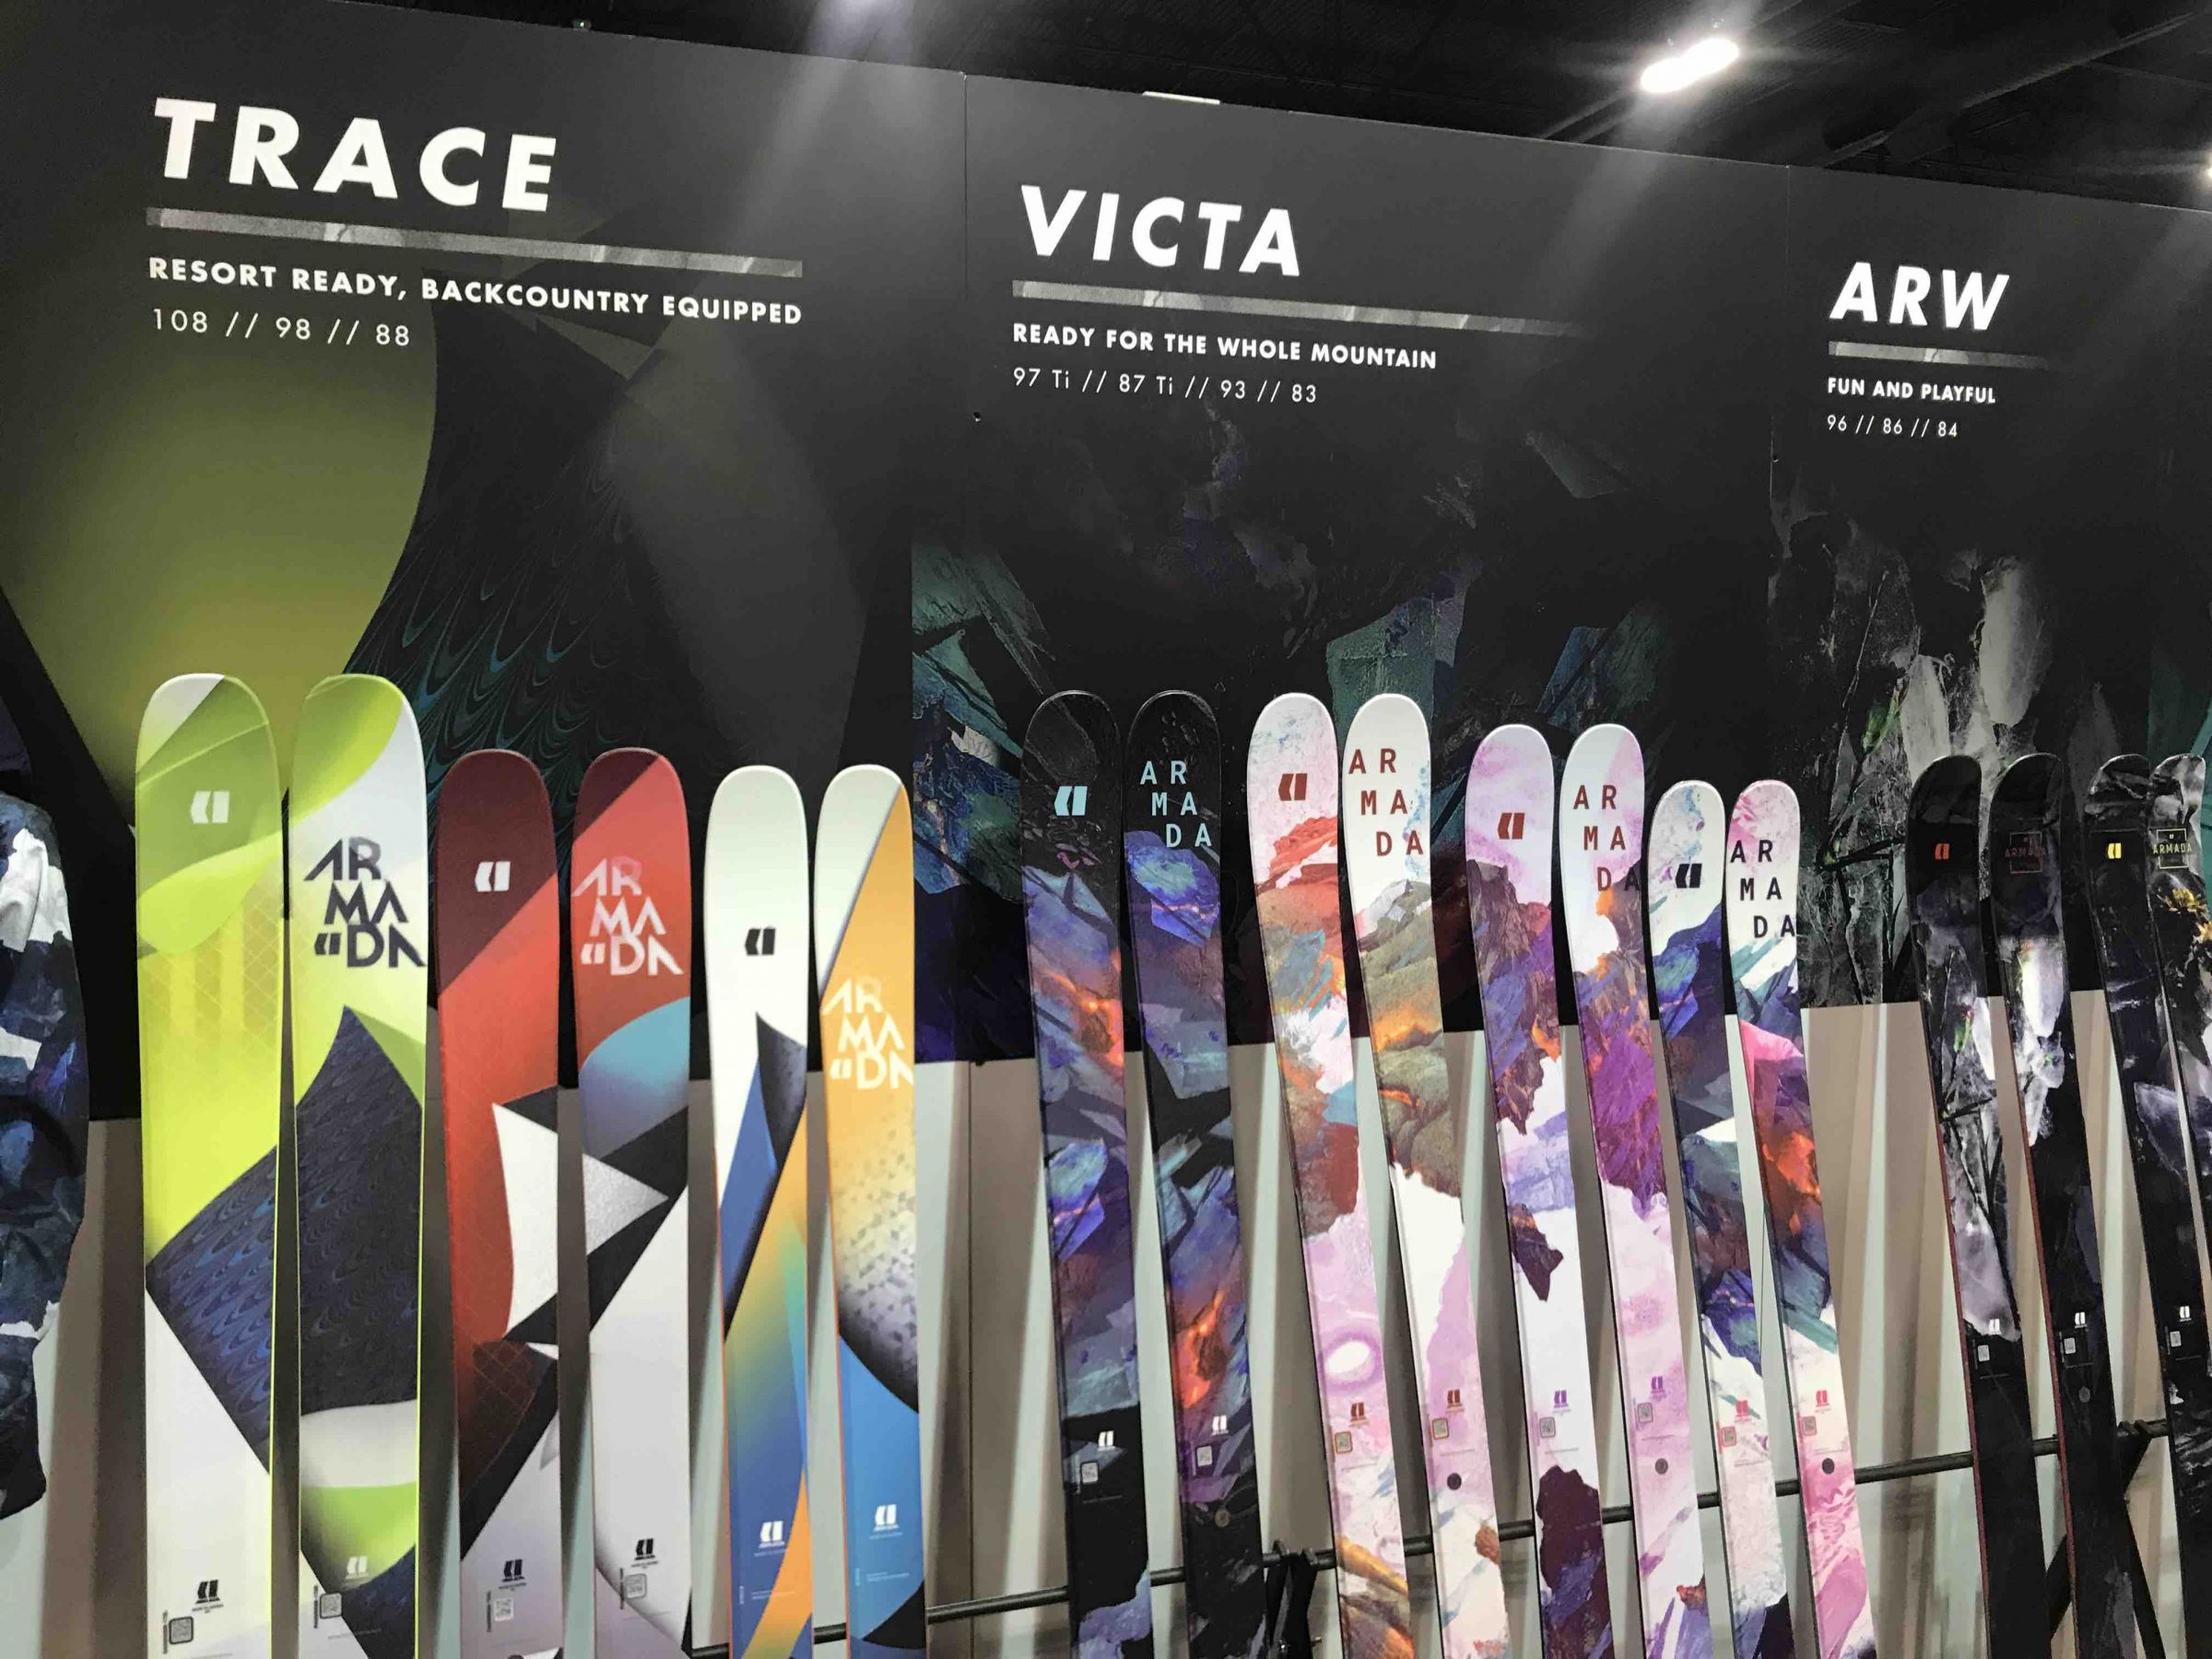 armada women's 2019 skis